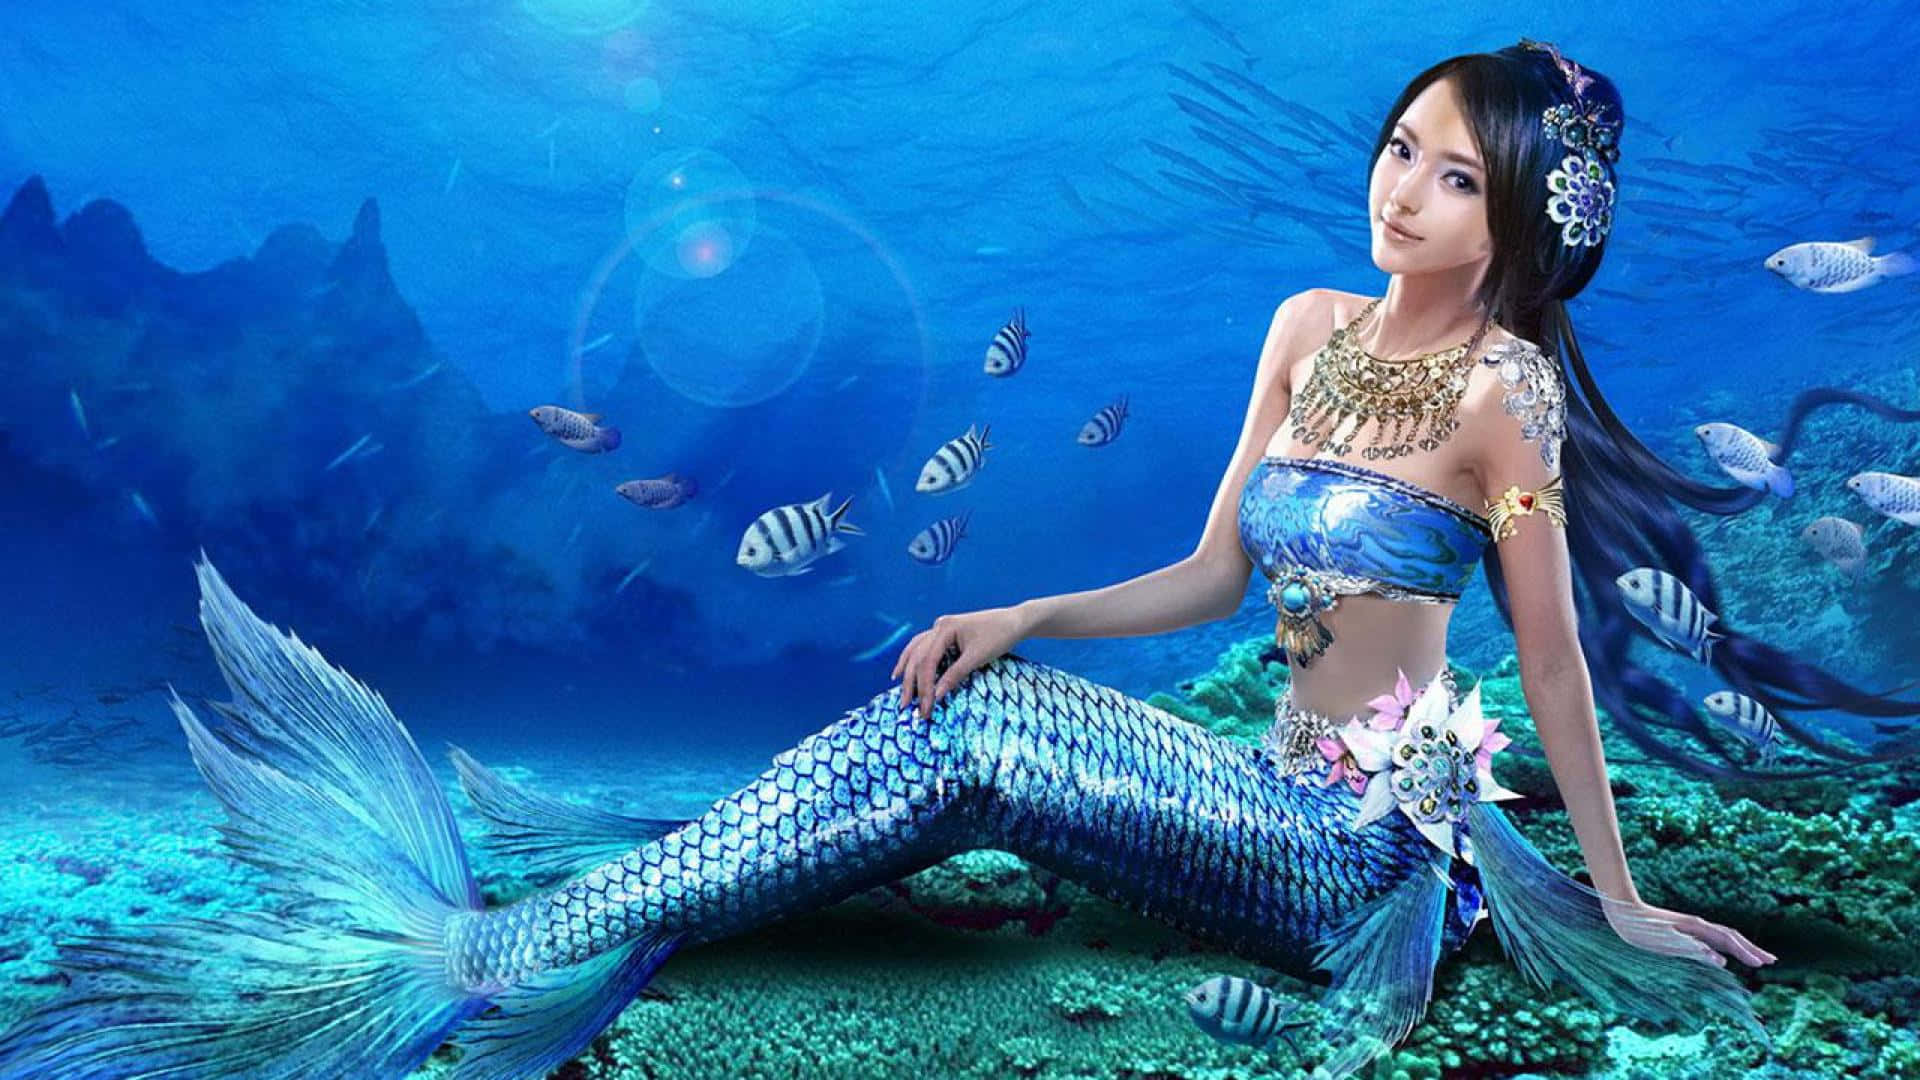 "Beautiful Mermaid Enchanting the Ocean" Wallpaper